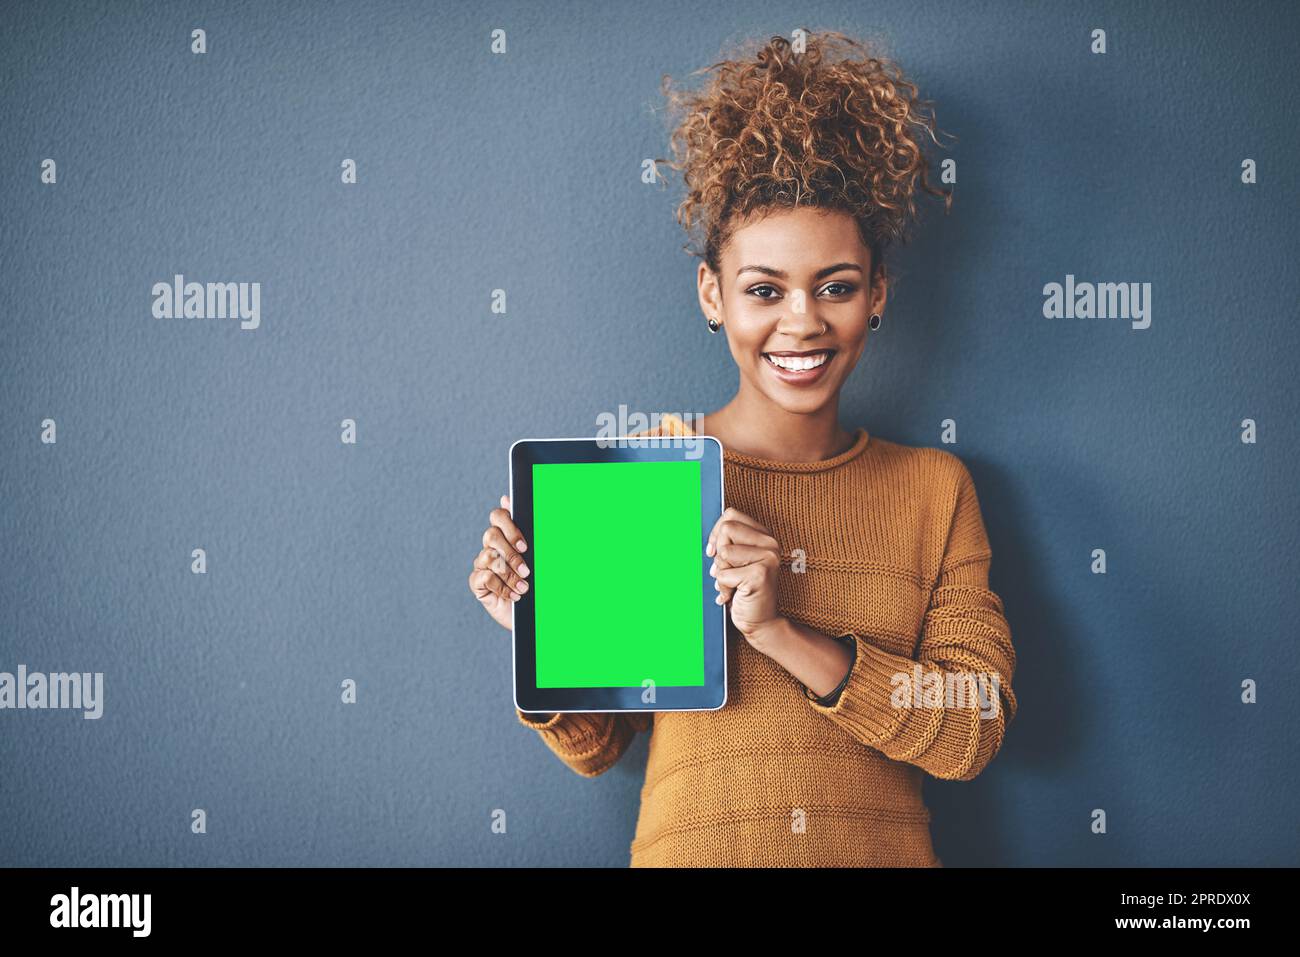 Afrikanische Frau mit Green Screen Tablet Copyspace. Süße, attraktive und lächelnde junge Afro-Frau, die ein Mobilgerät zeigt.eine glückliche, fröhliche und ethnische Frau nach dem Kauf einer neuen App. Stockfoto